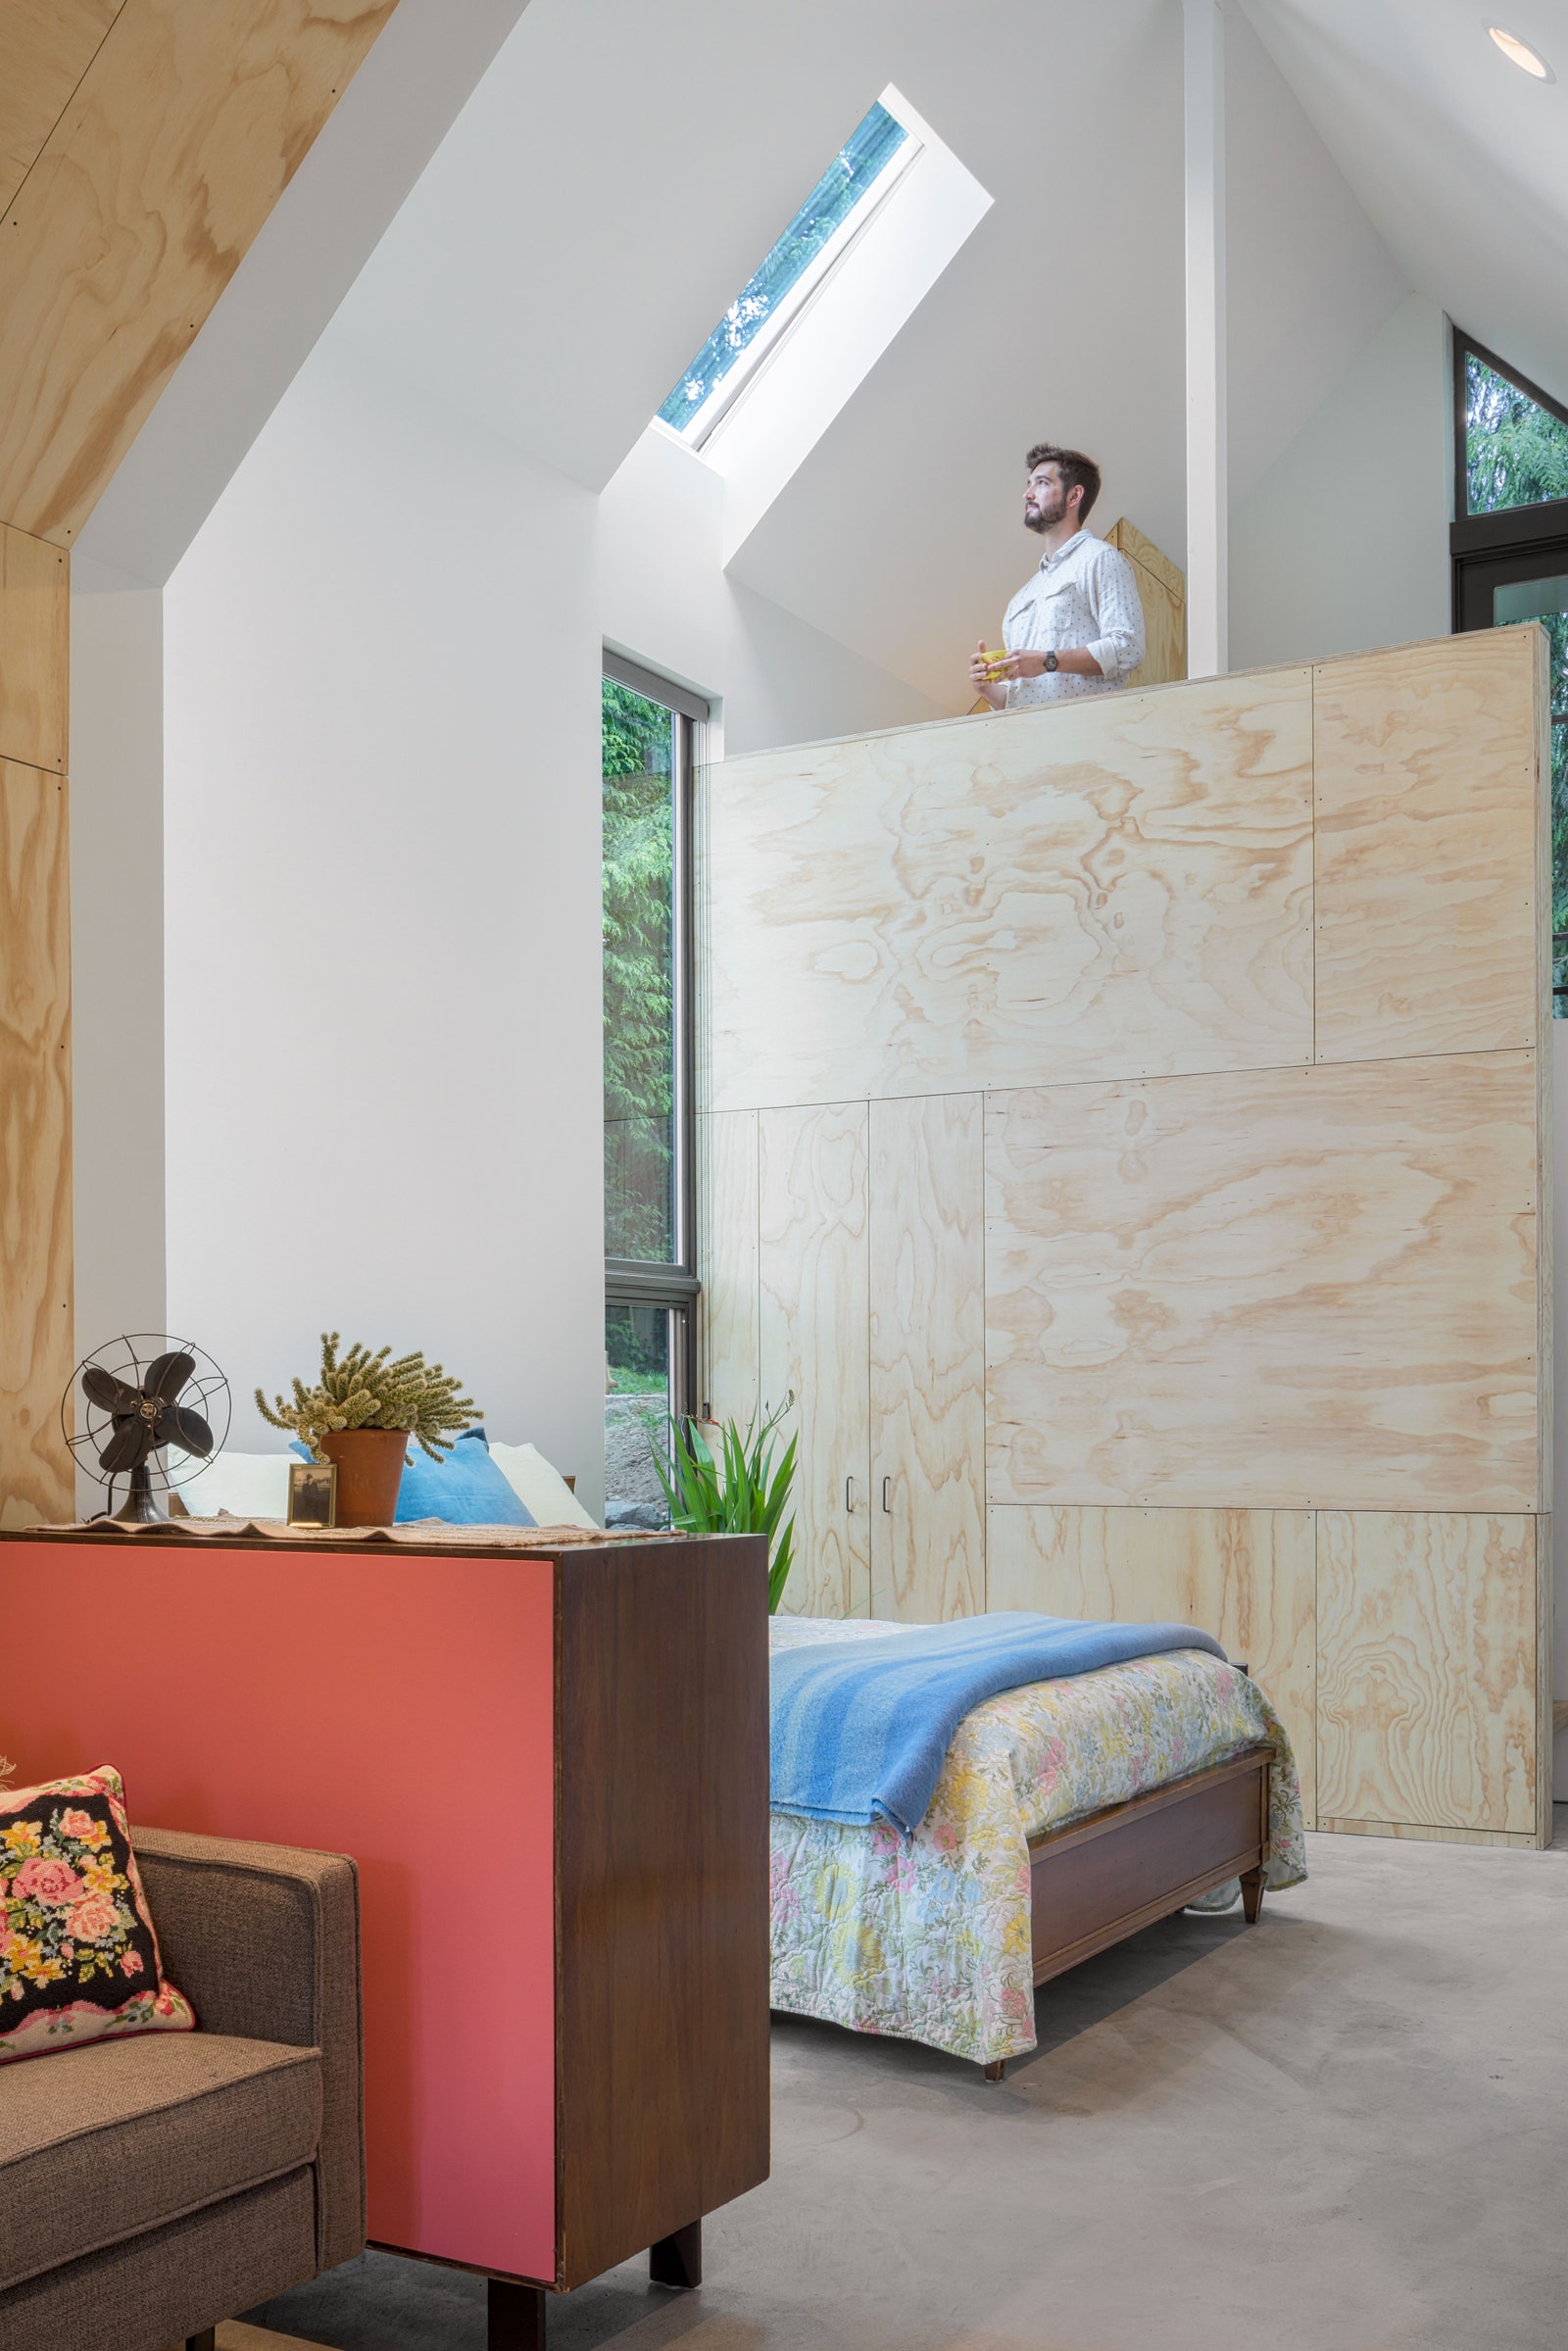 L'image peut contenir du bois contreplaqué personne humaine à l'intérieur de la salle de meubles design d'intérieur bâtiment et architecture